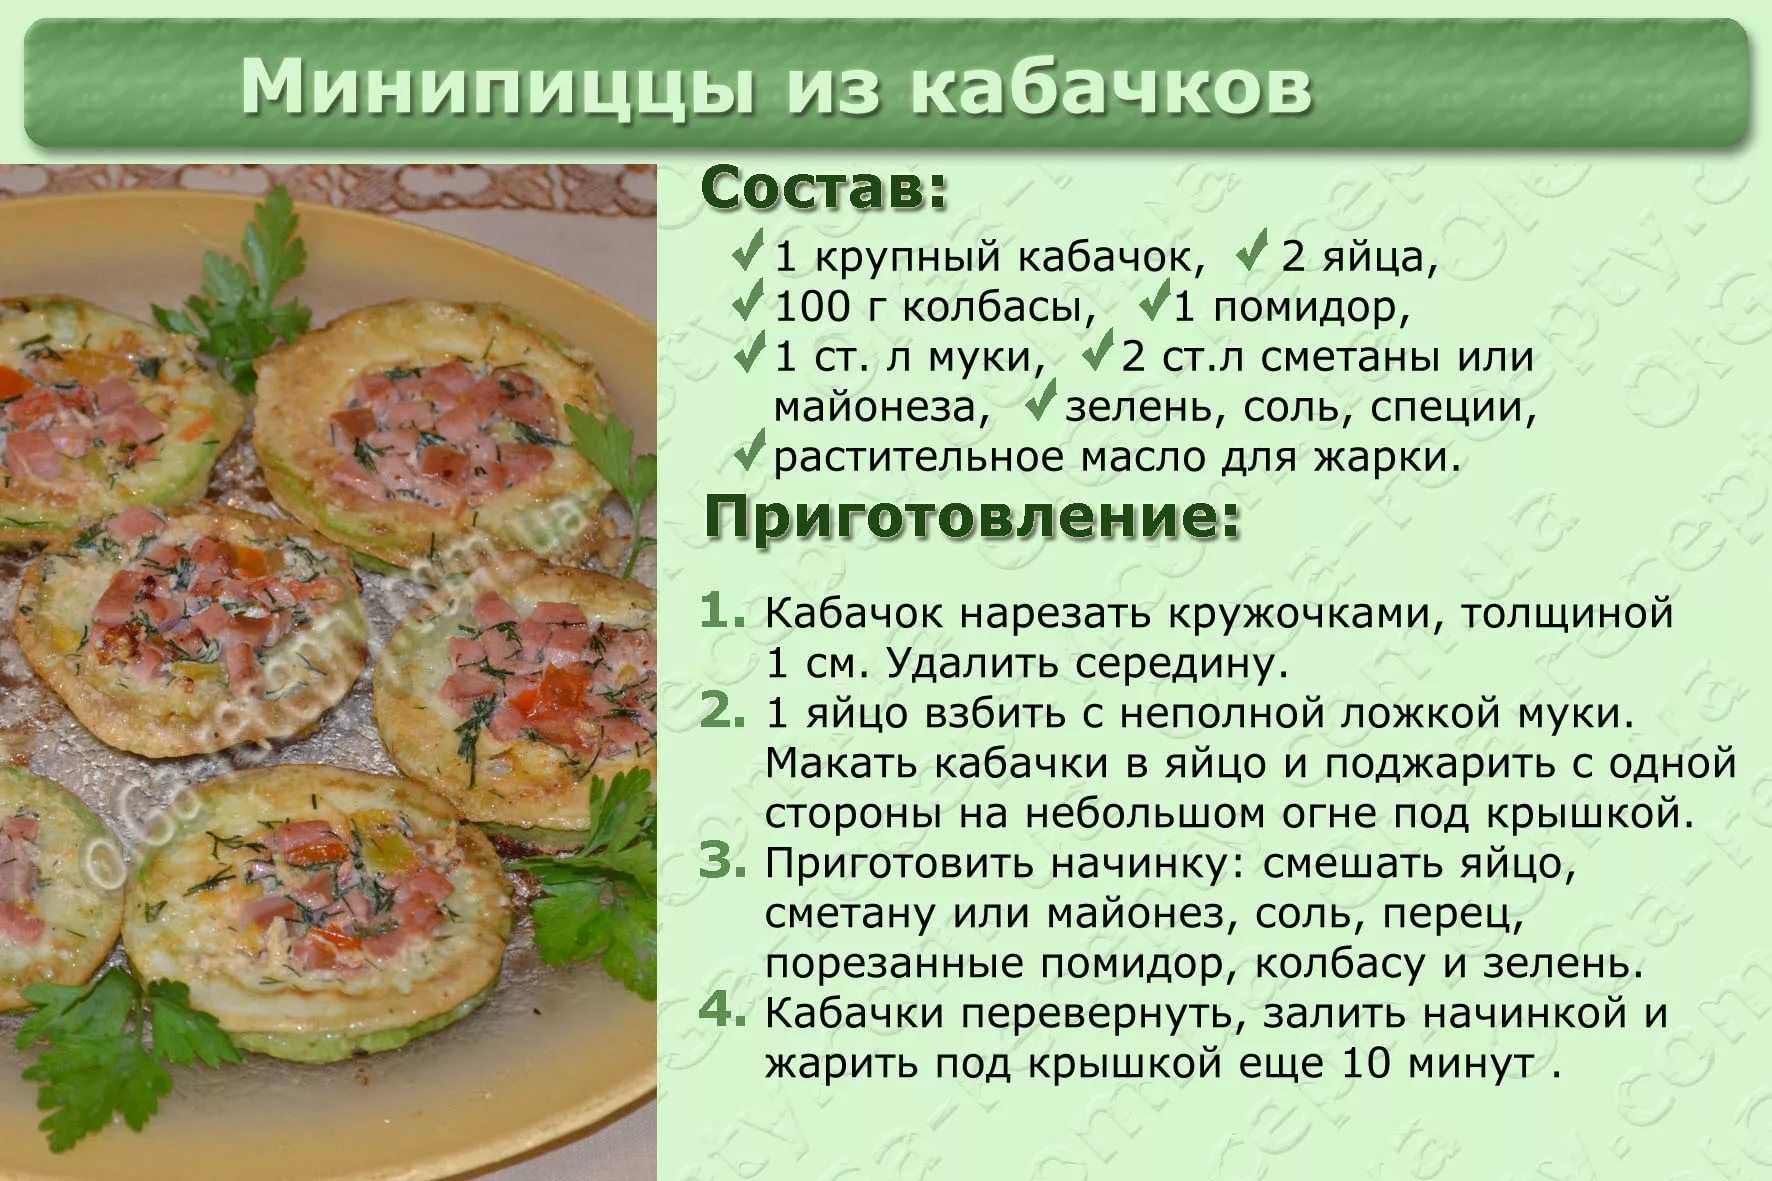 Украинский борщ со свининой и свежей капустой, приготовленный по классическим рецептам